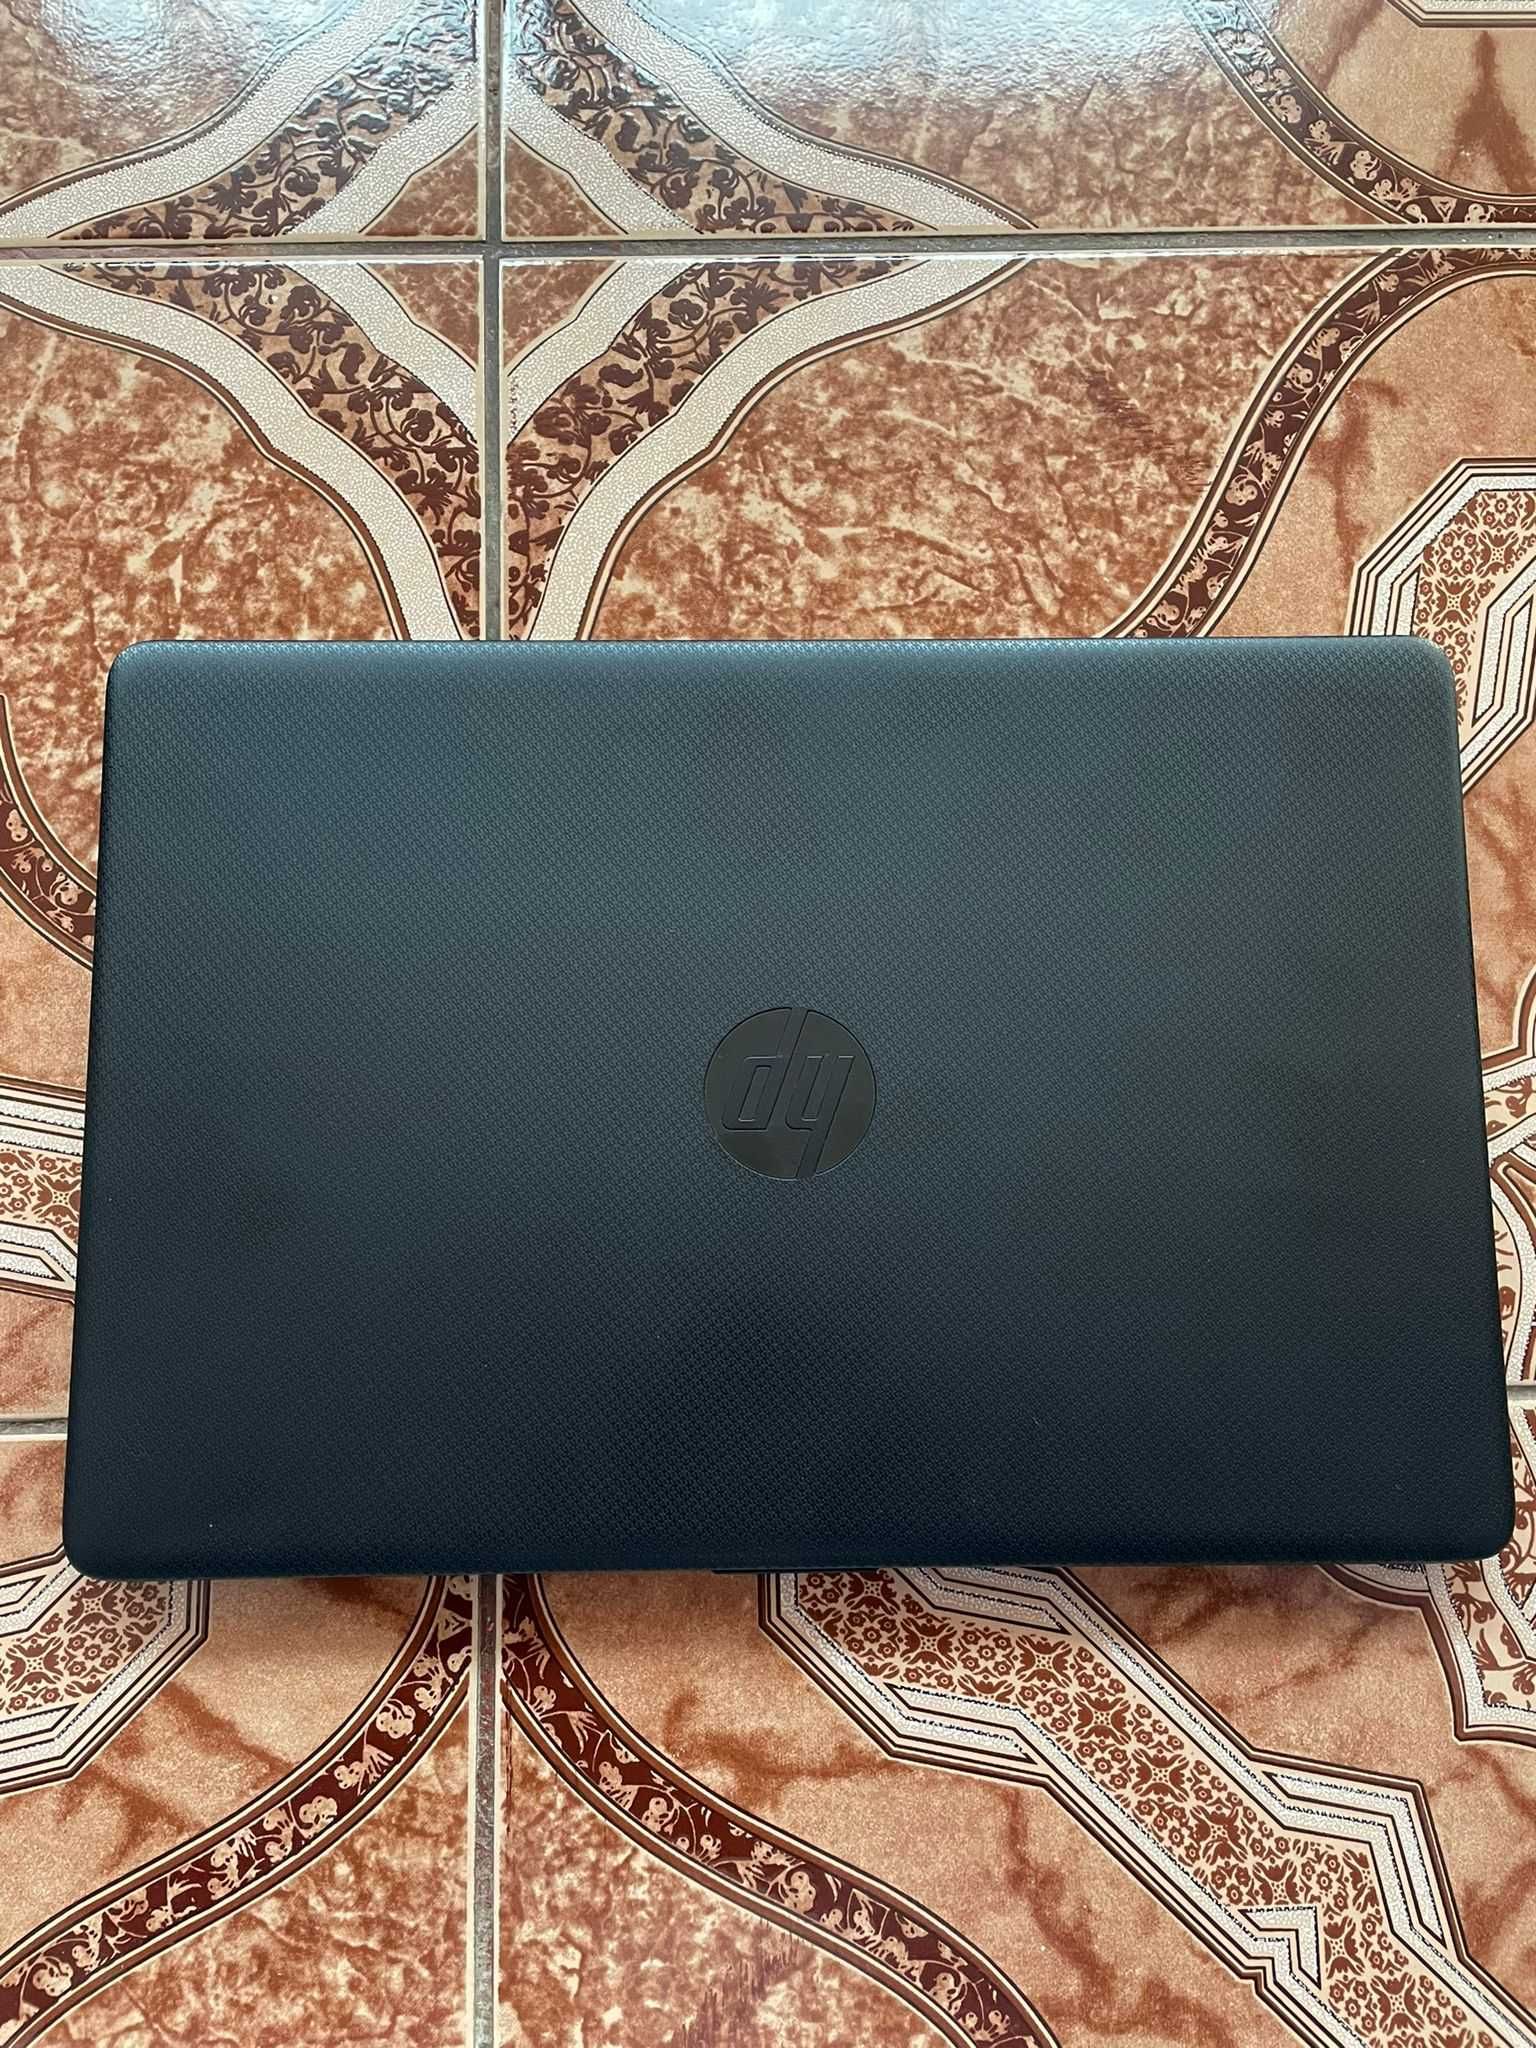 Laptop gaming HP pavilion Intel i7¹⁰ᵗʰ ᵍᵉⁿ